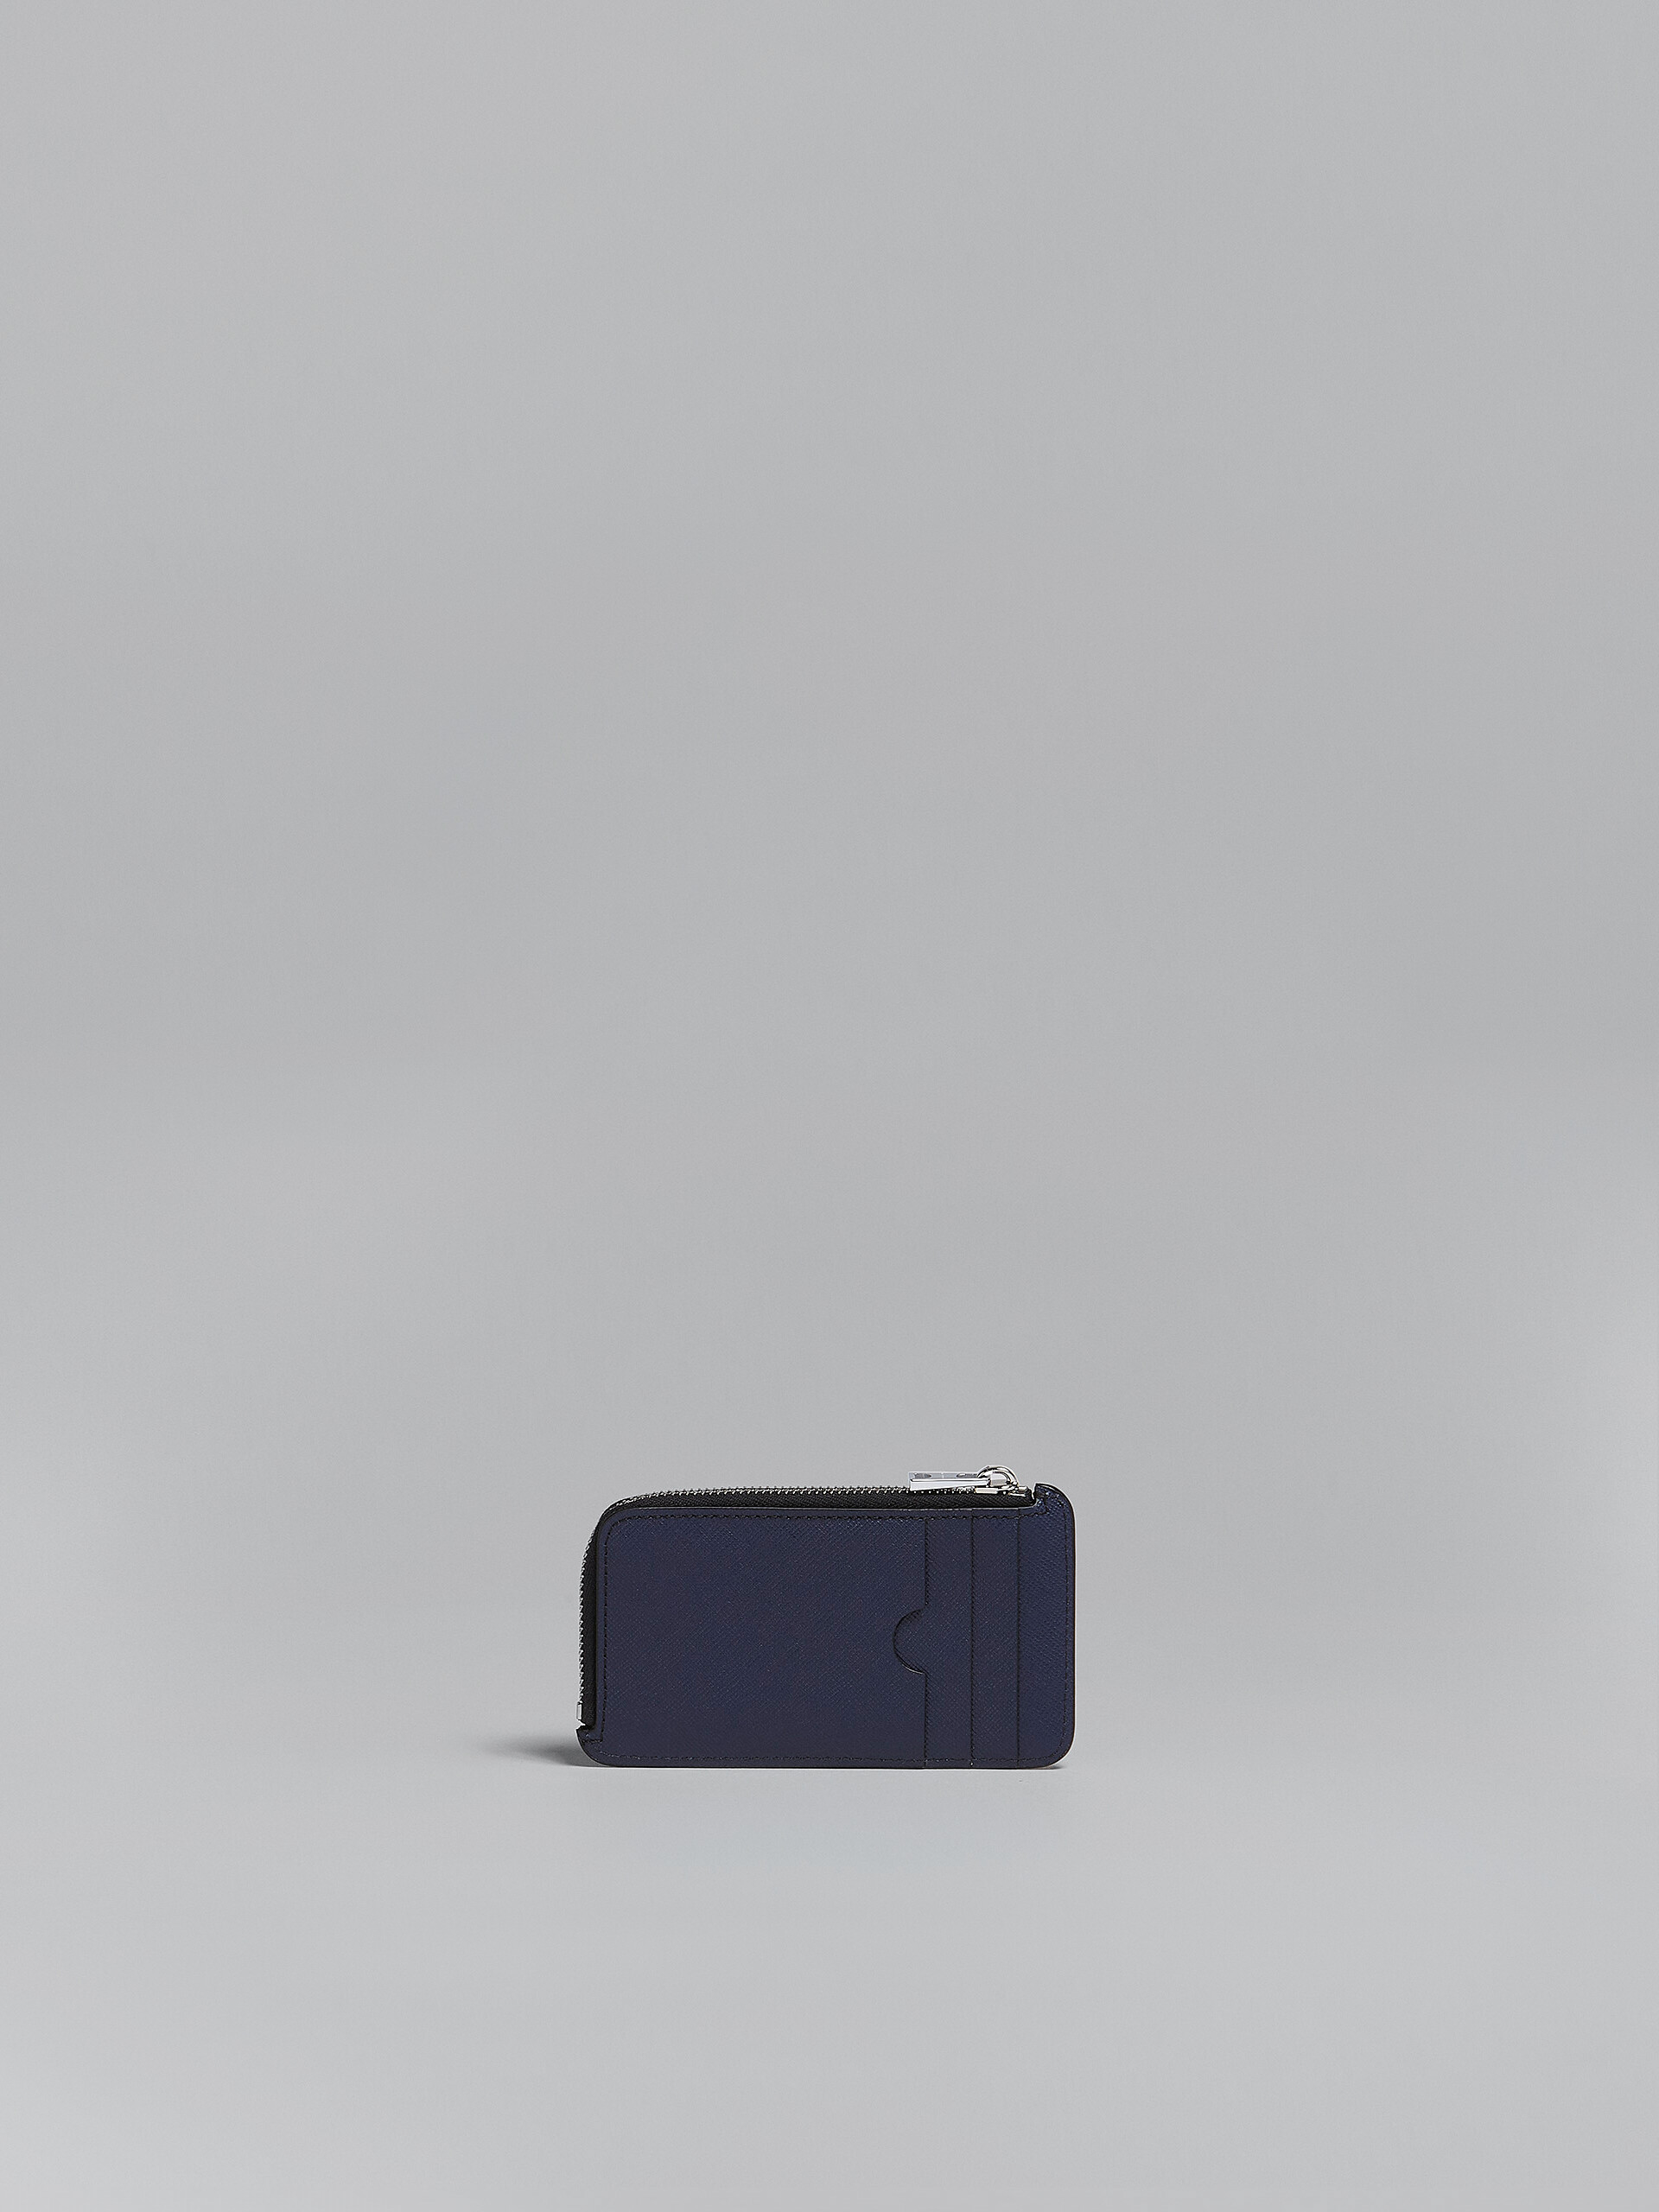 Portacarte con zip in saffiano grigio e blu - Portafogli - Image 3